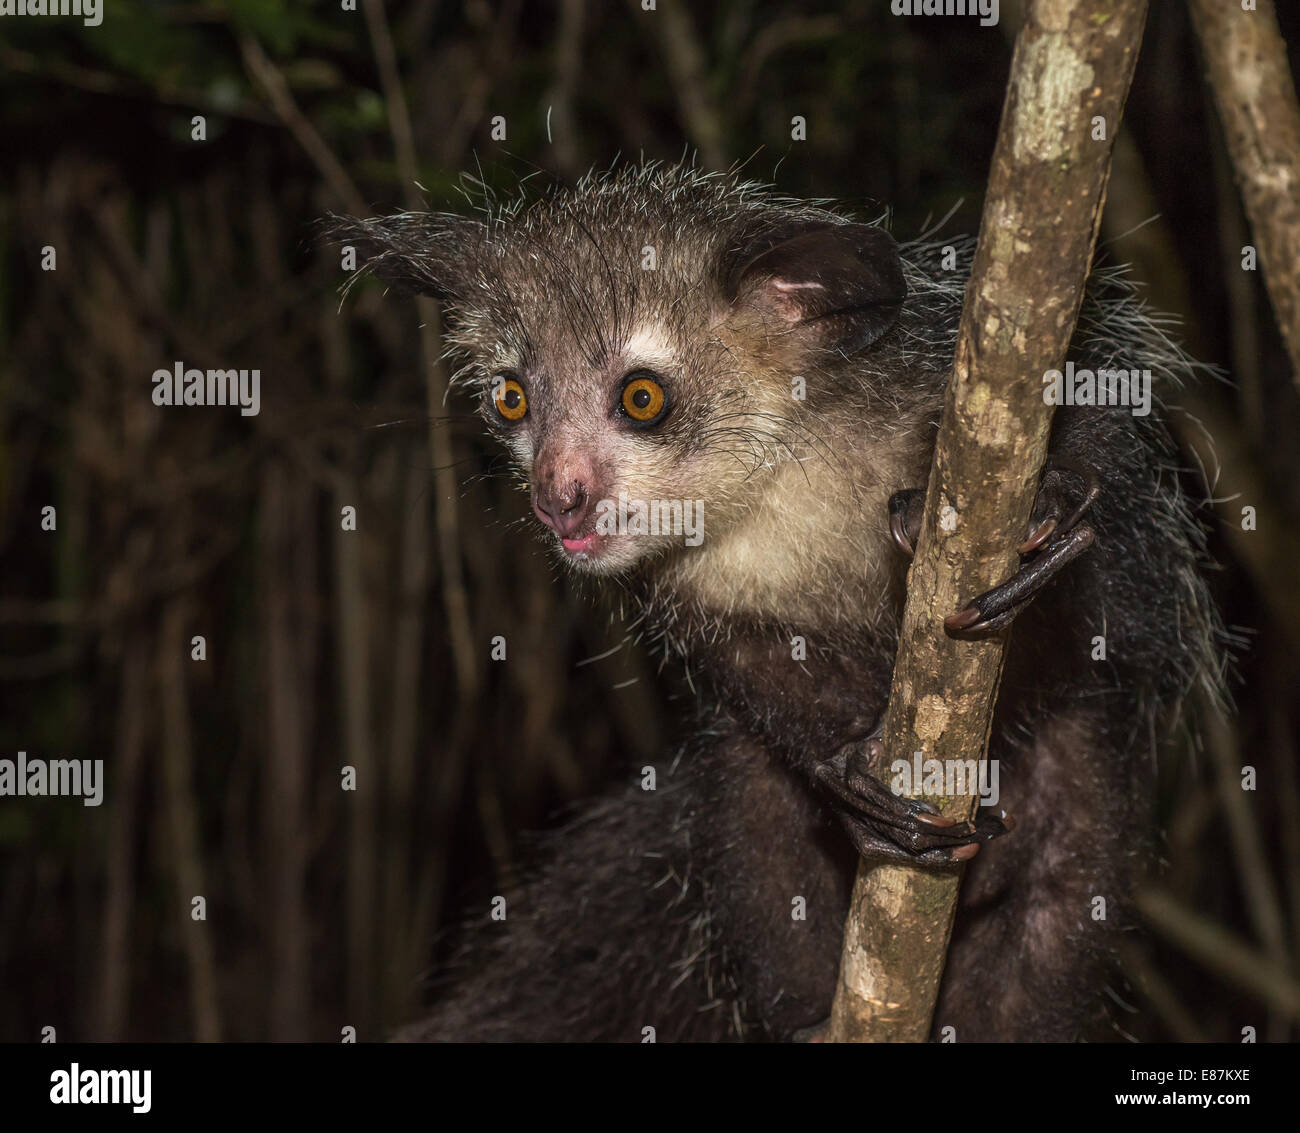 Aye-aye, nocturnal lemur of Madagascar Stock Photo